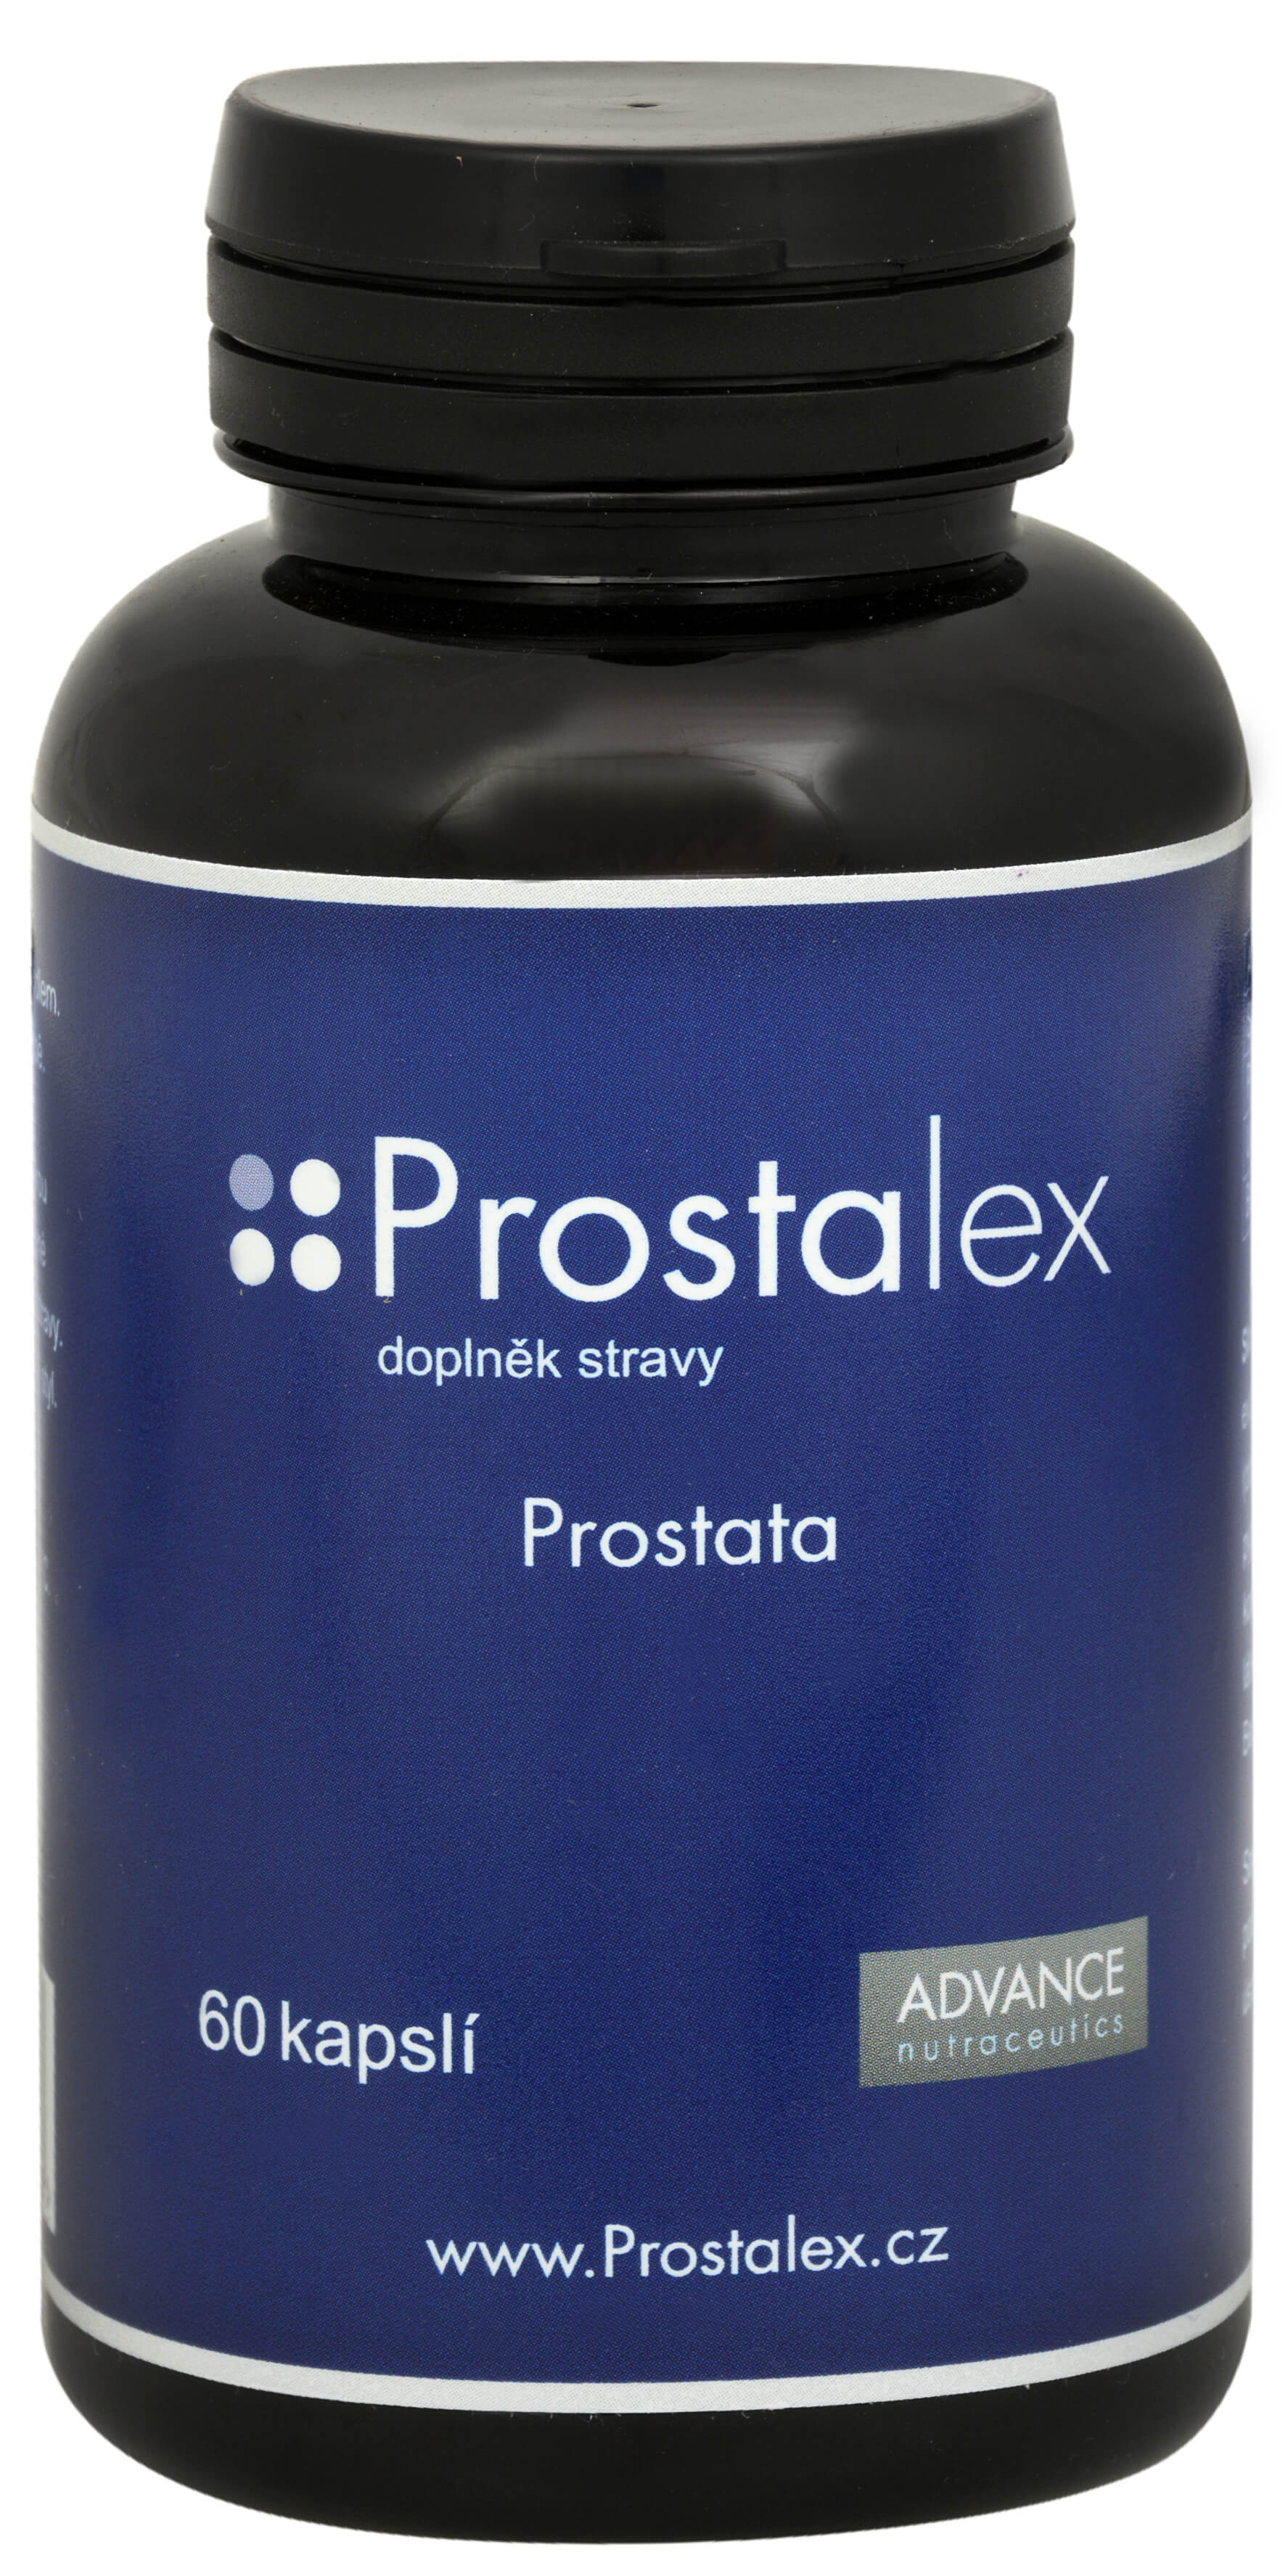 Zobrazit detail výrobku Advance nutraceutics Prostalex 60 kapslí + 2 měsíce na vrácení zboží